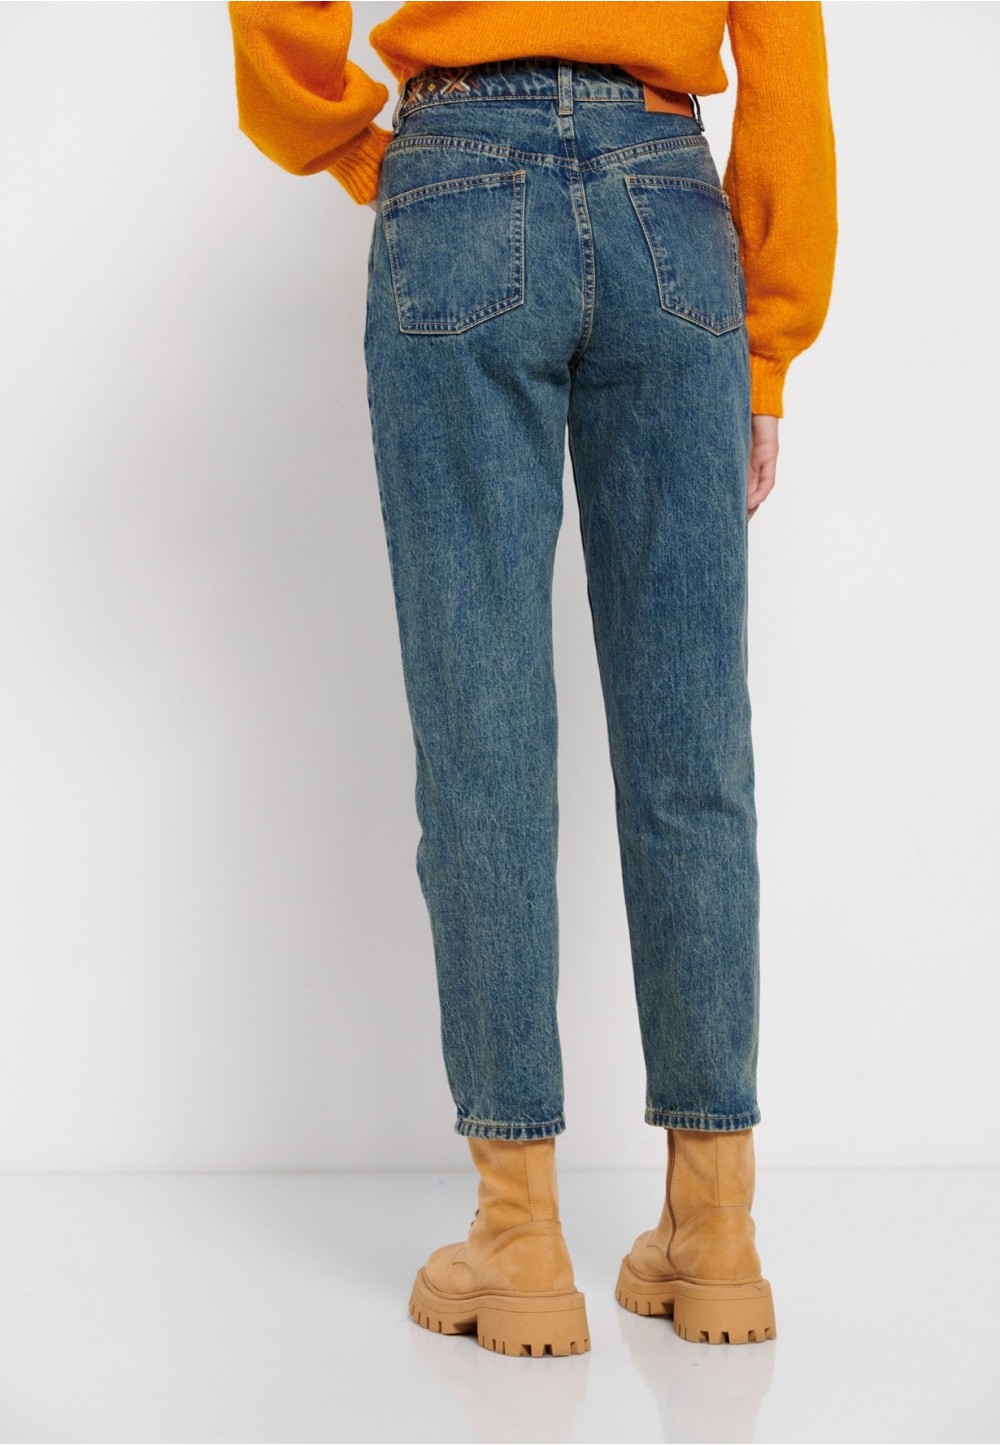 Жіночі джинси з ефектом потертості